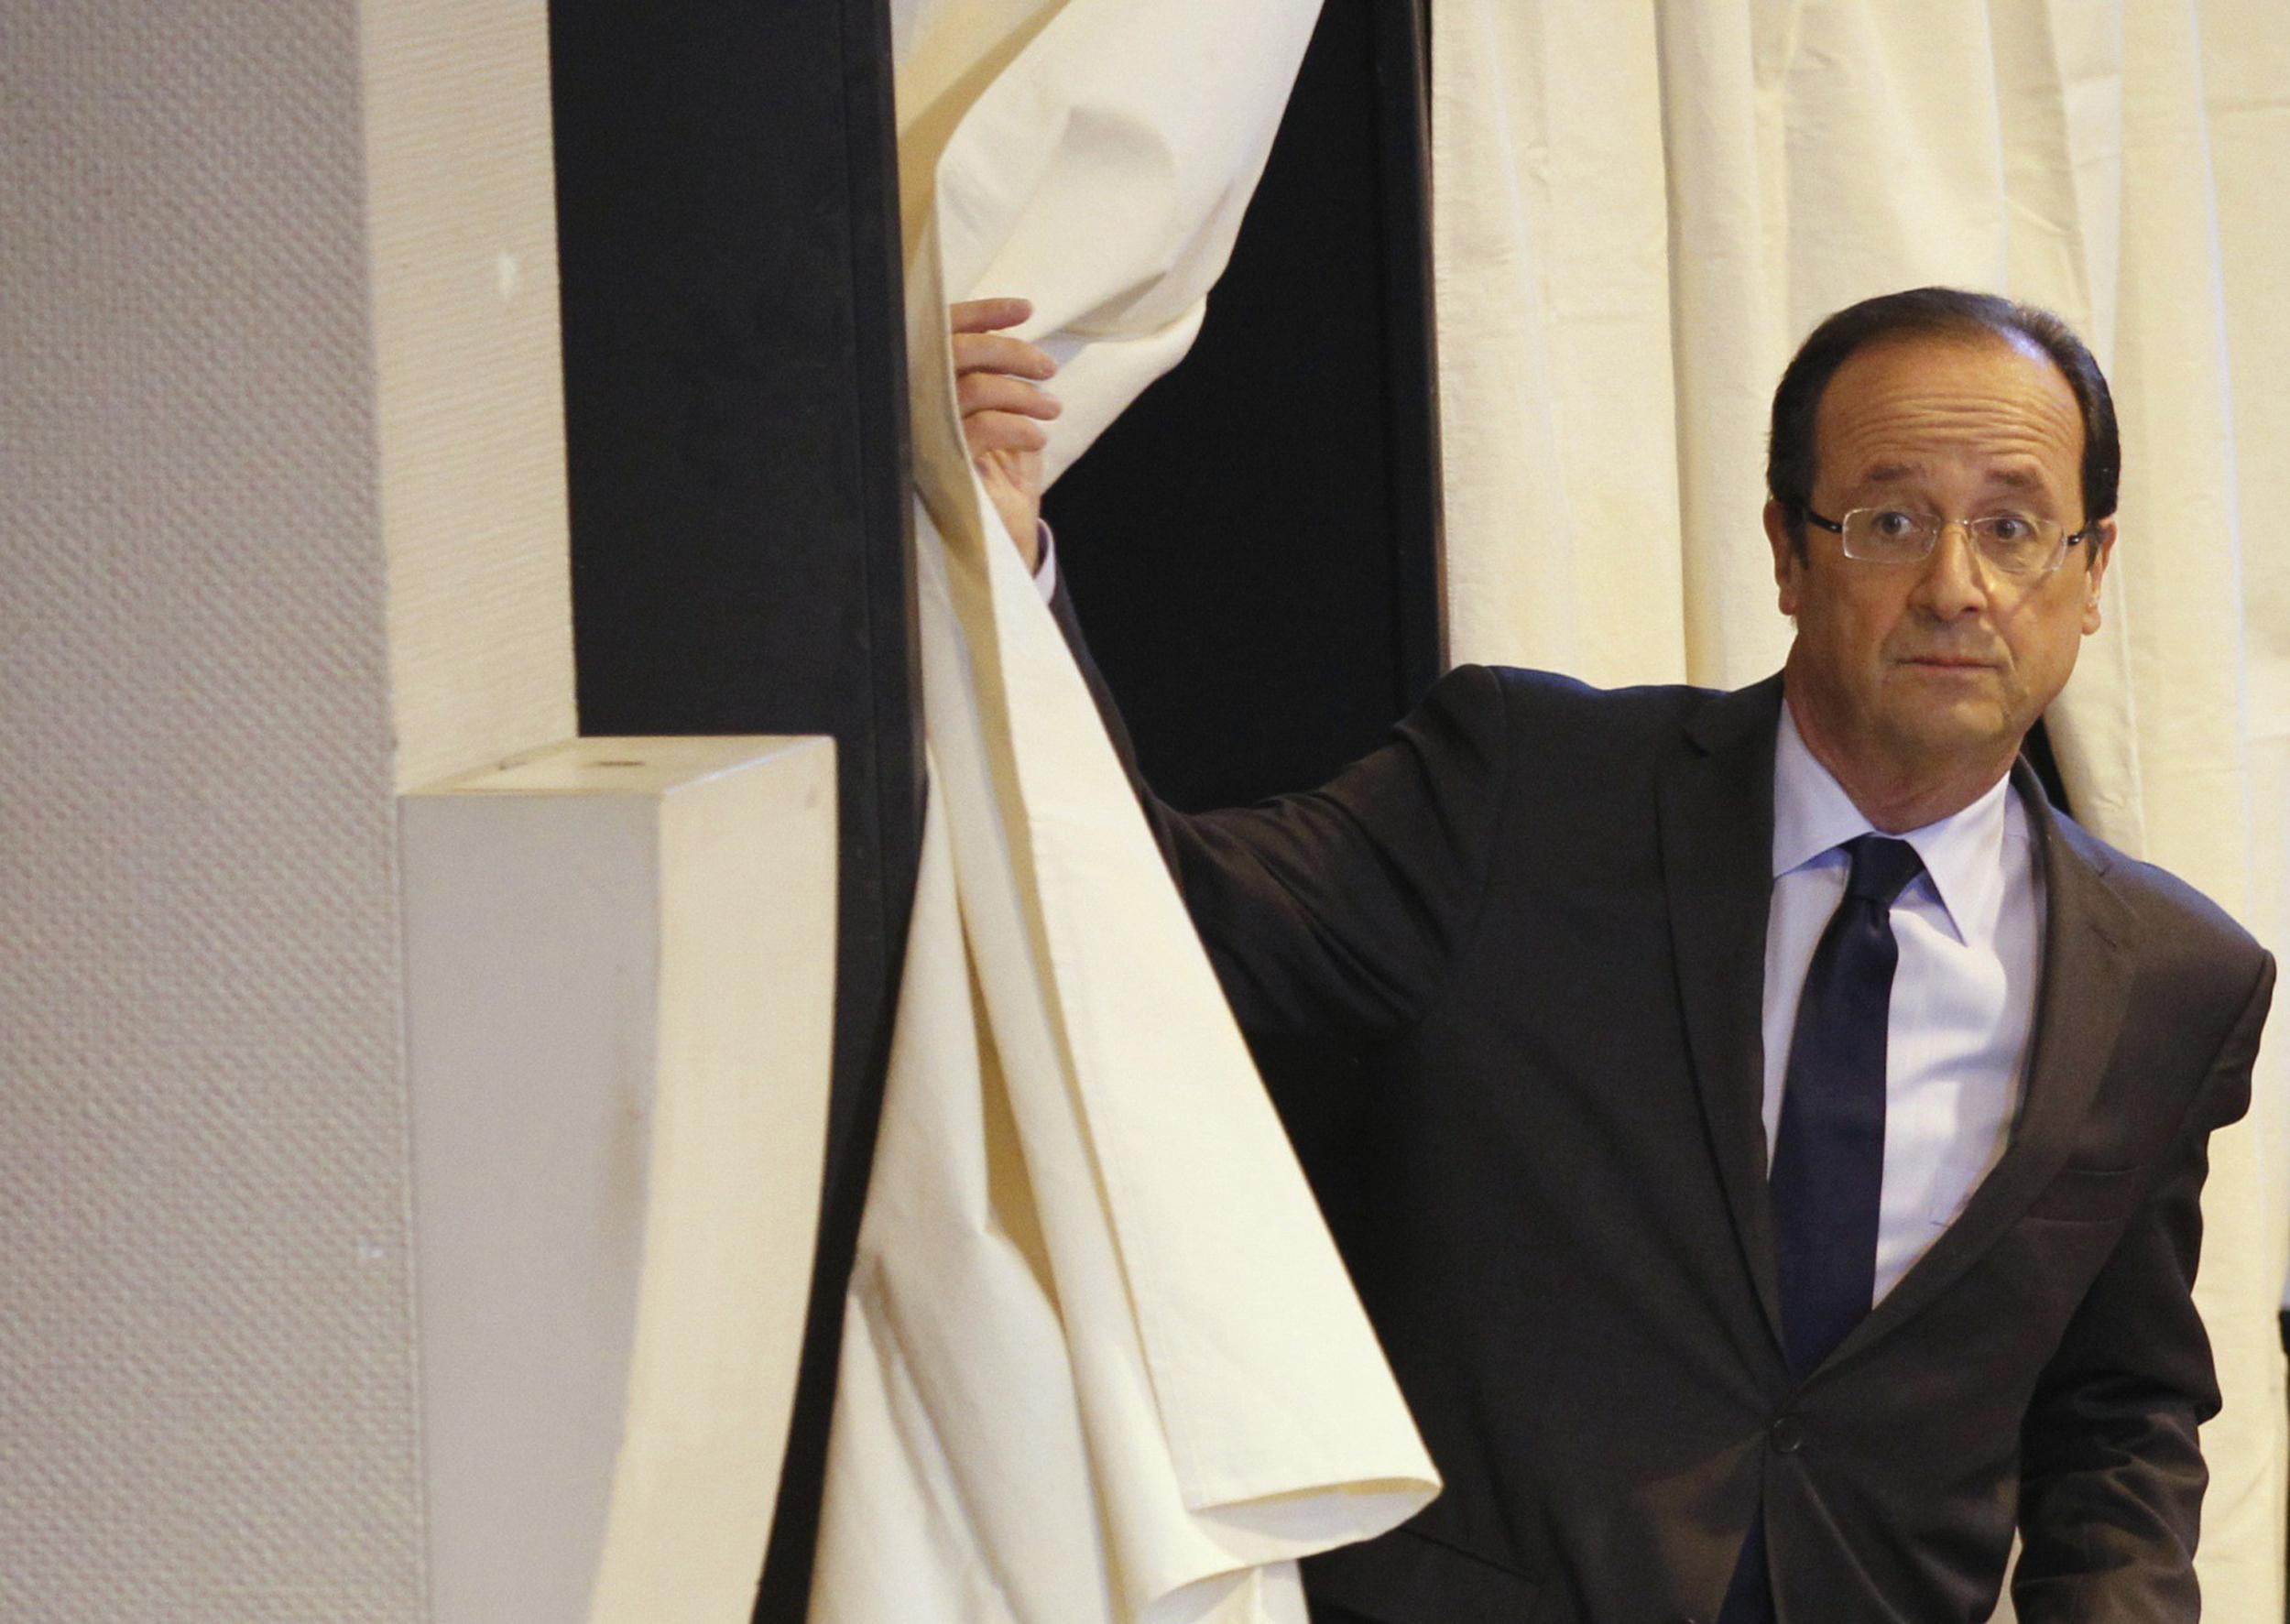 François Hollande votes in Tulle, France